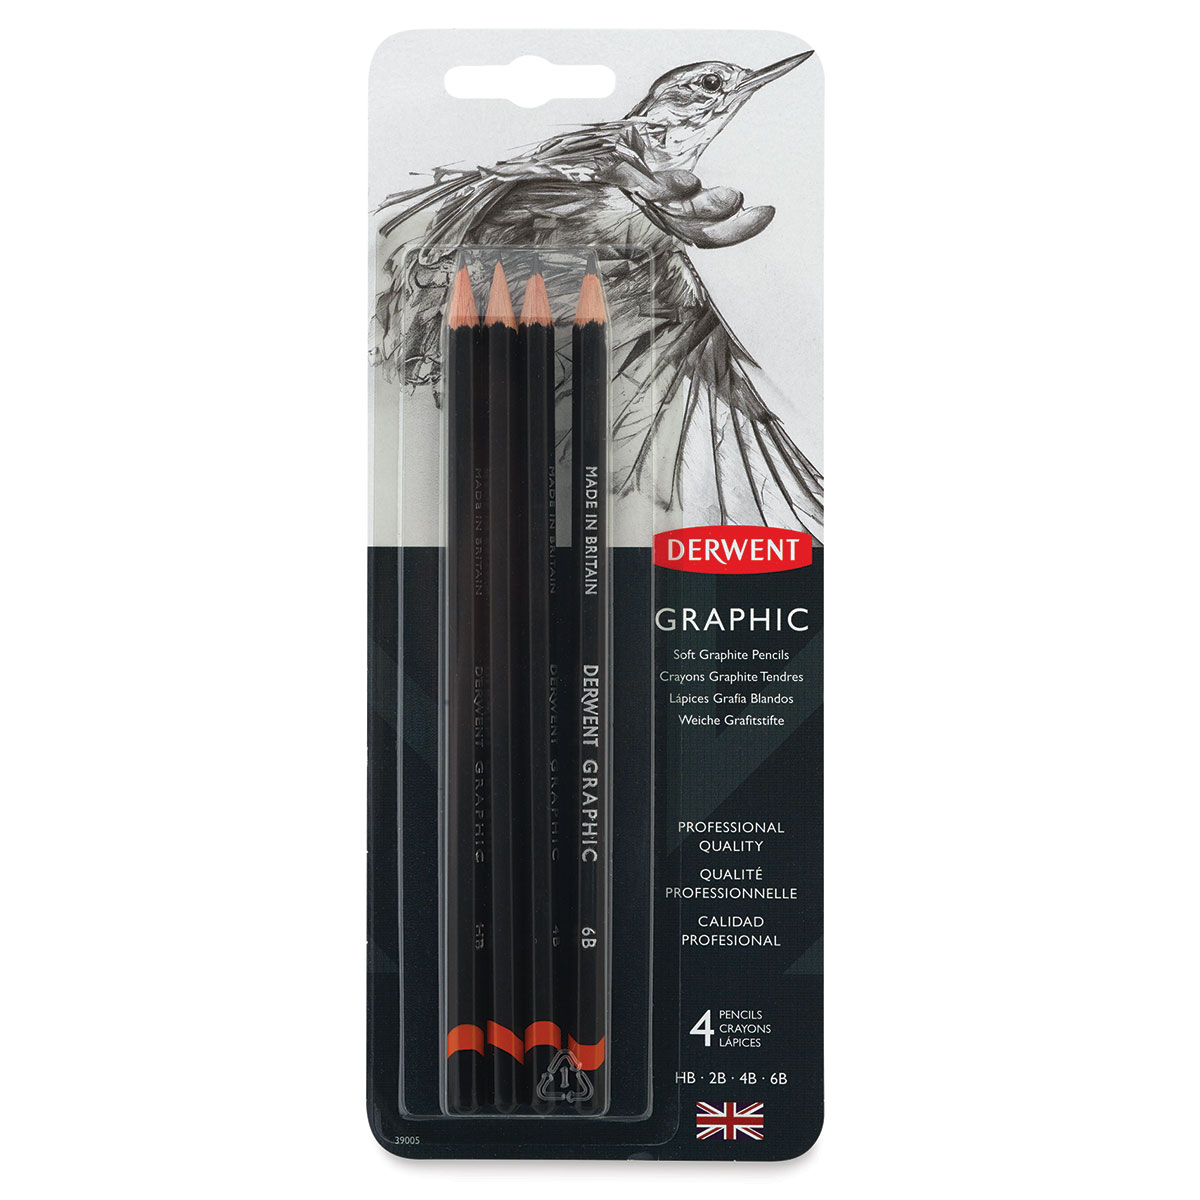 derwent watersoluble sketching pencil, dark wash 8B – A Paper Hat